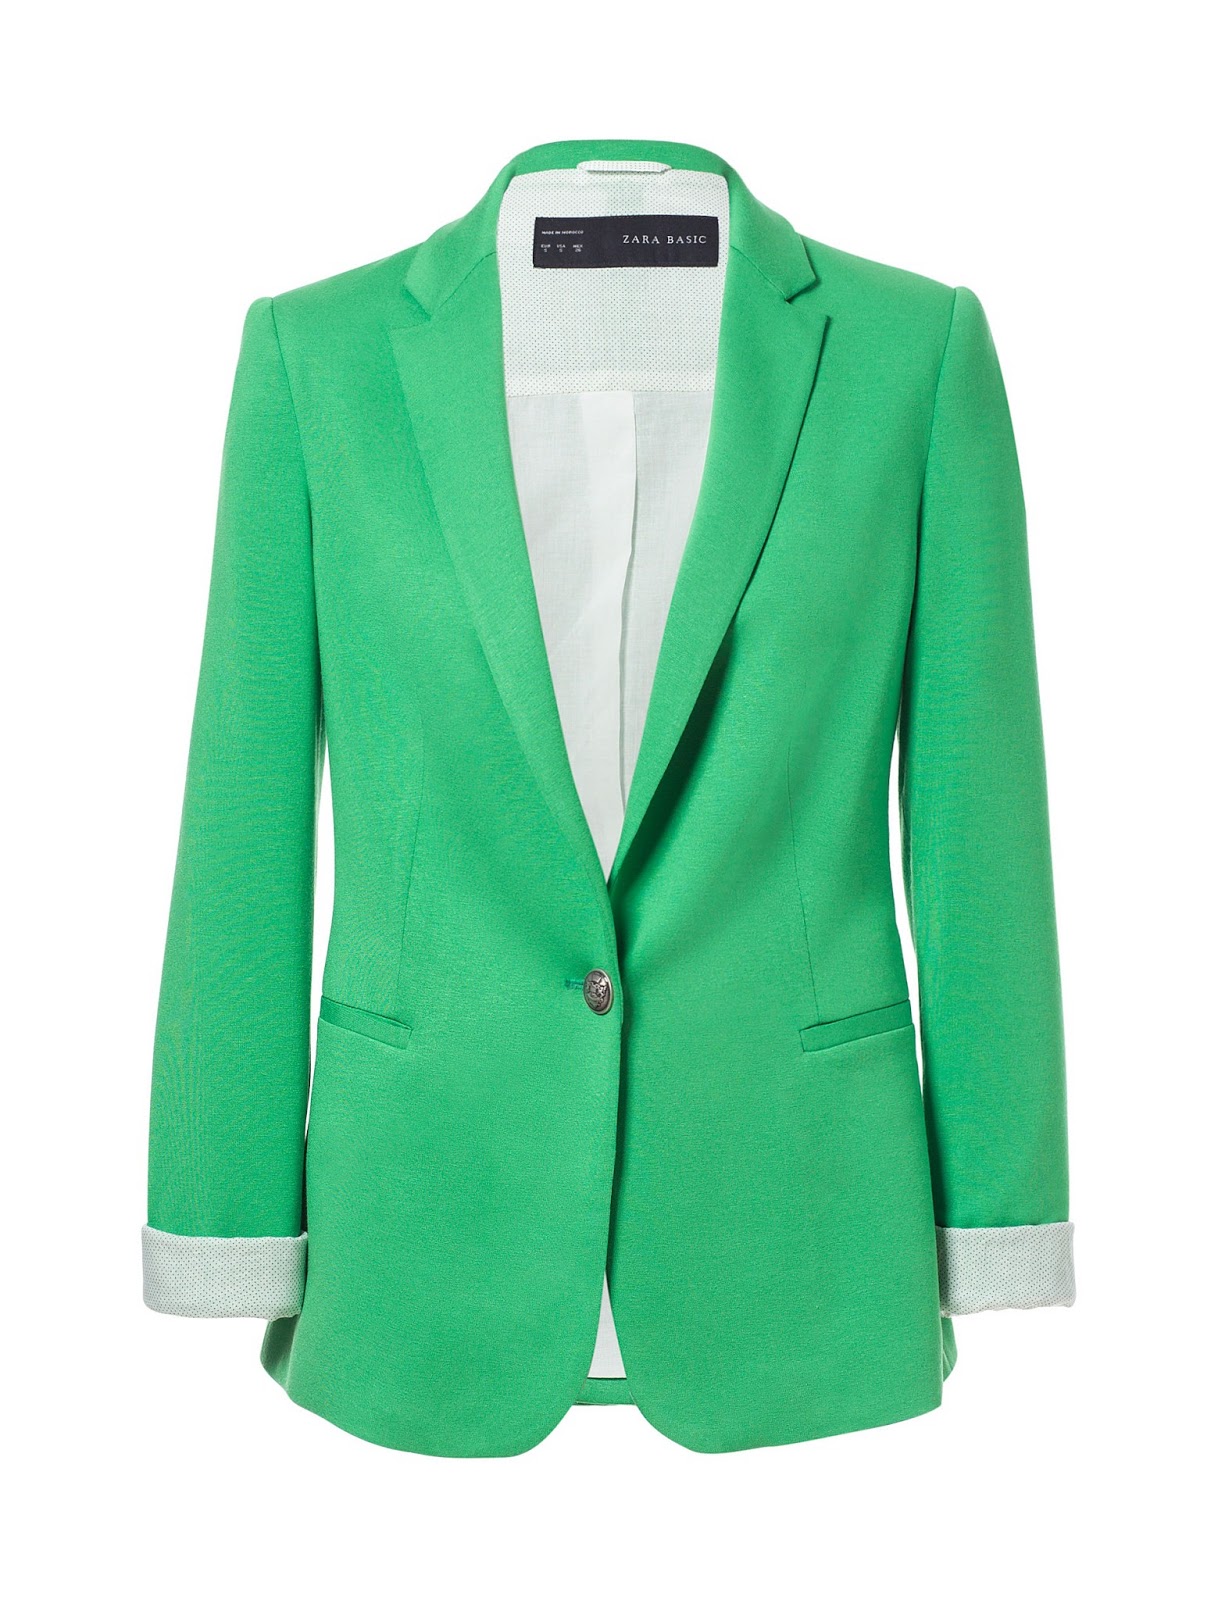 London Personal Shopper: Zara: Single Button Blazer